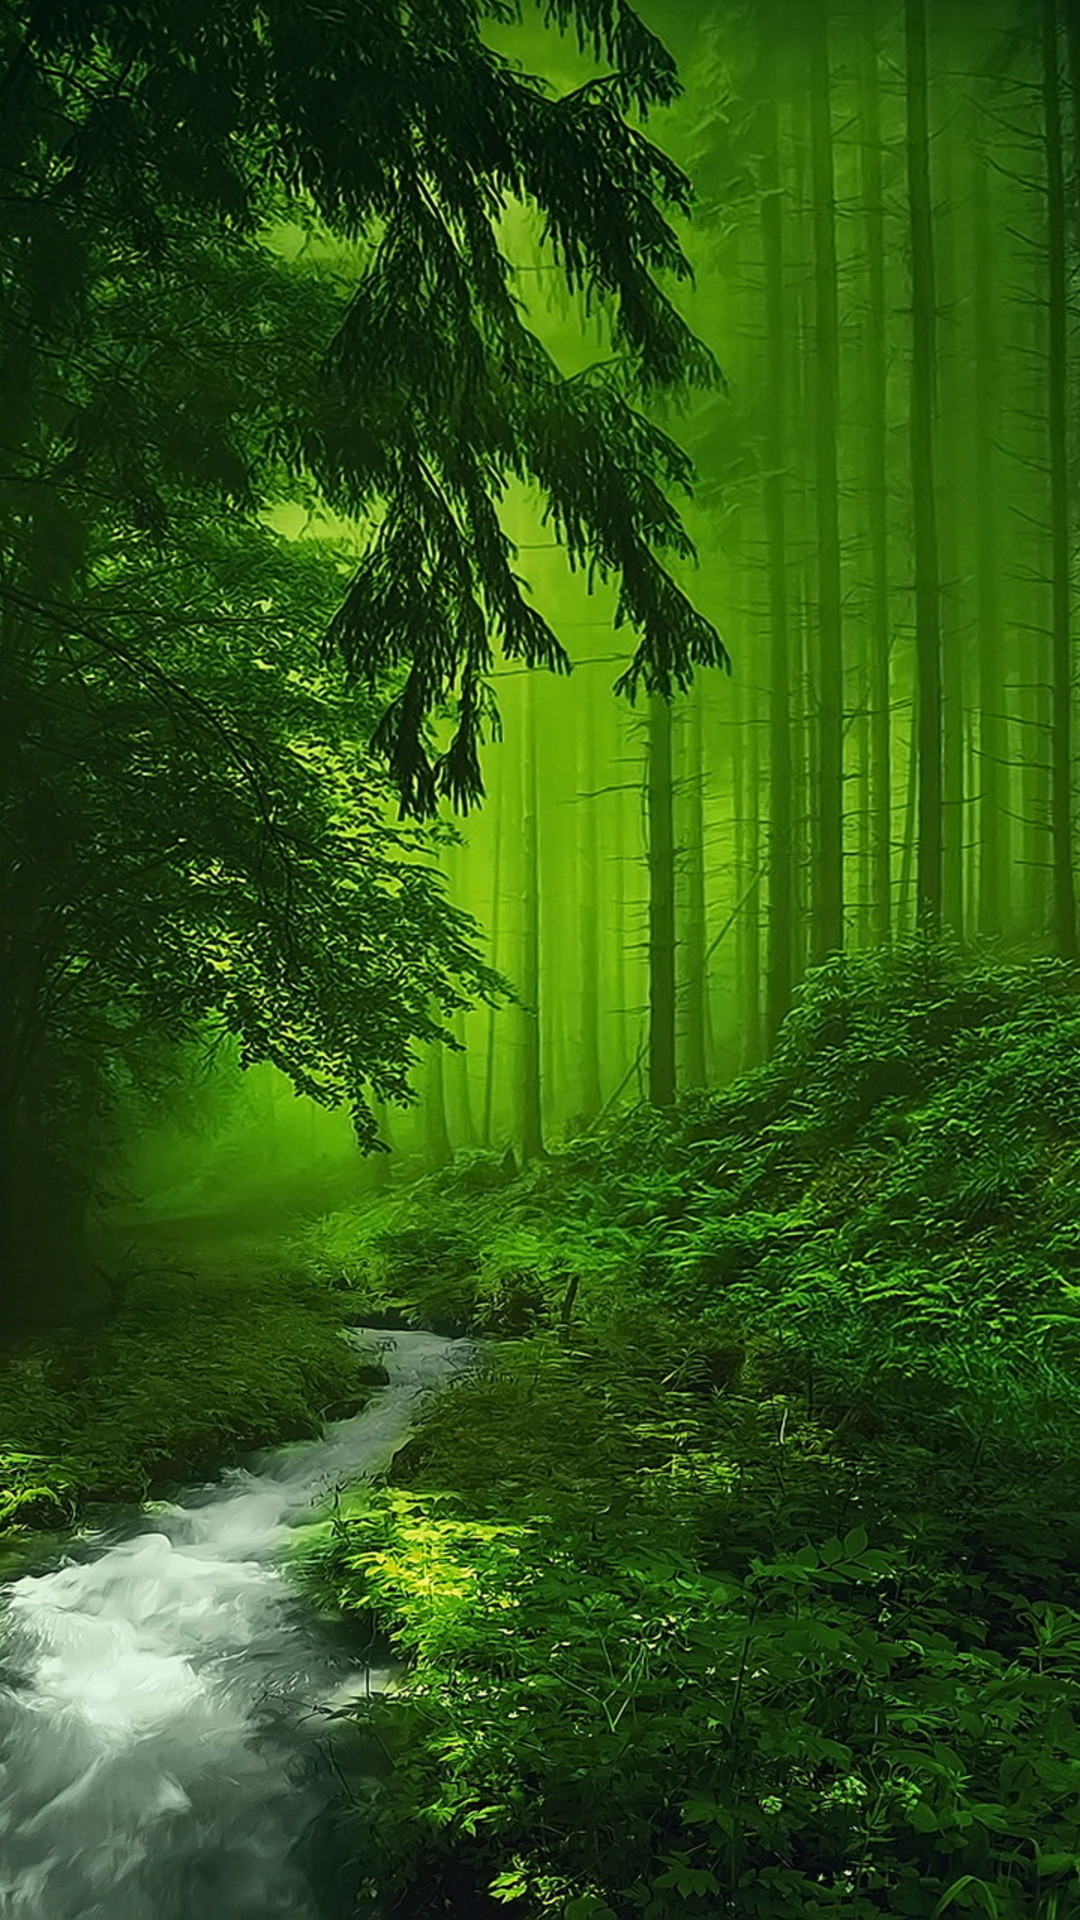 miglior sfondo verde,paesaggio naturale,natura,verde,foresta,albero